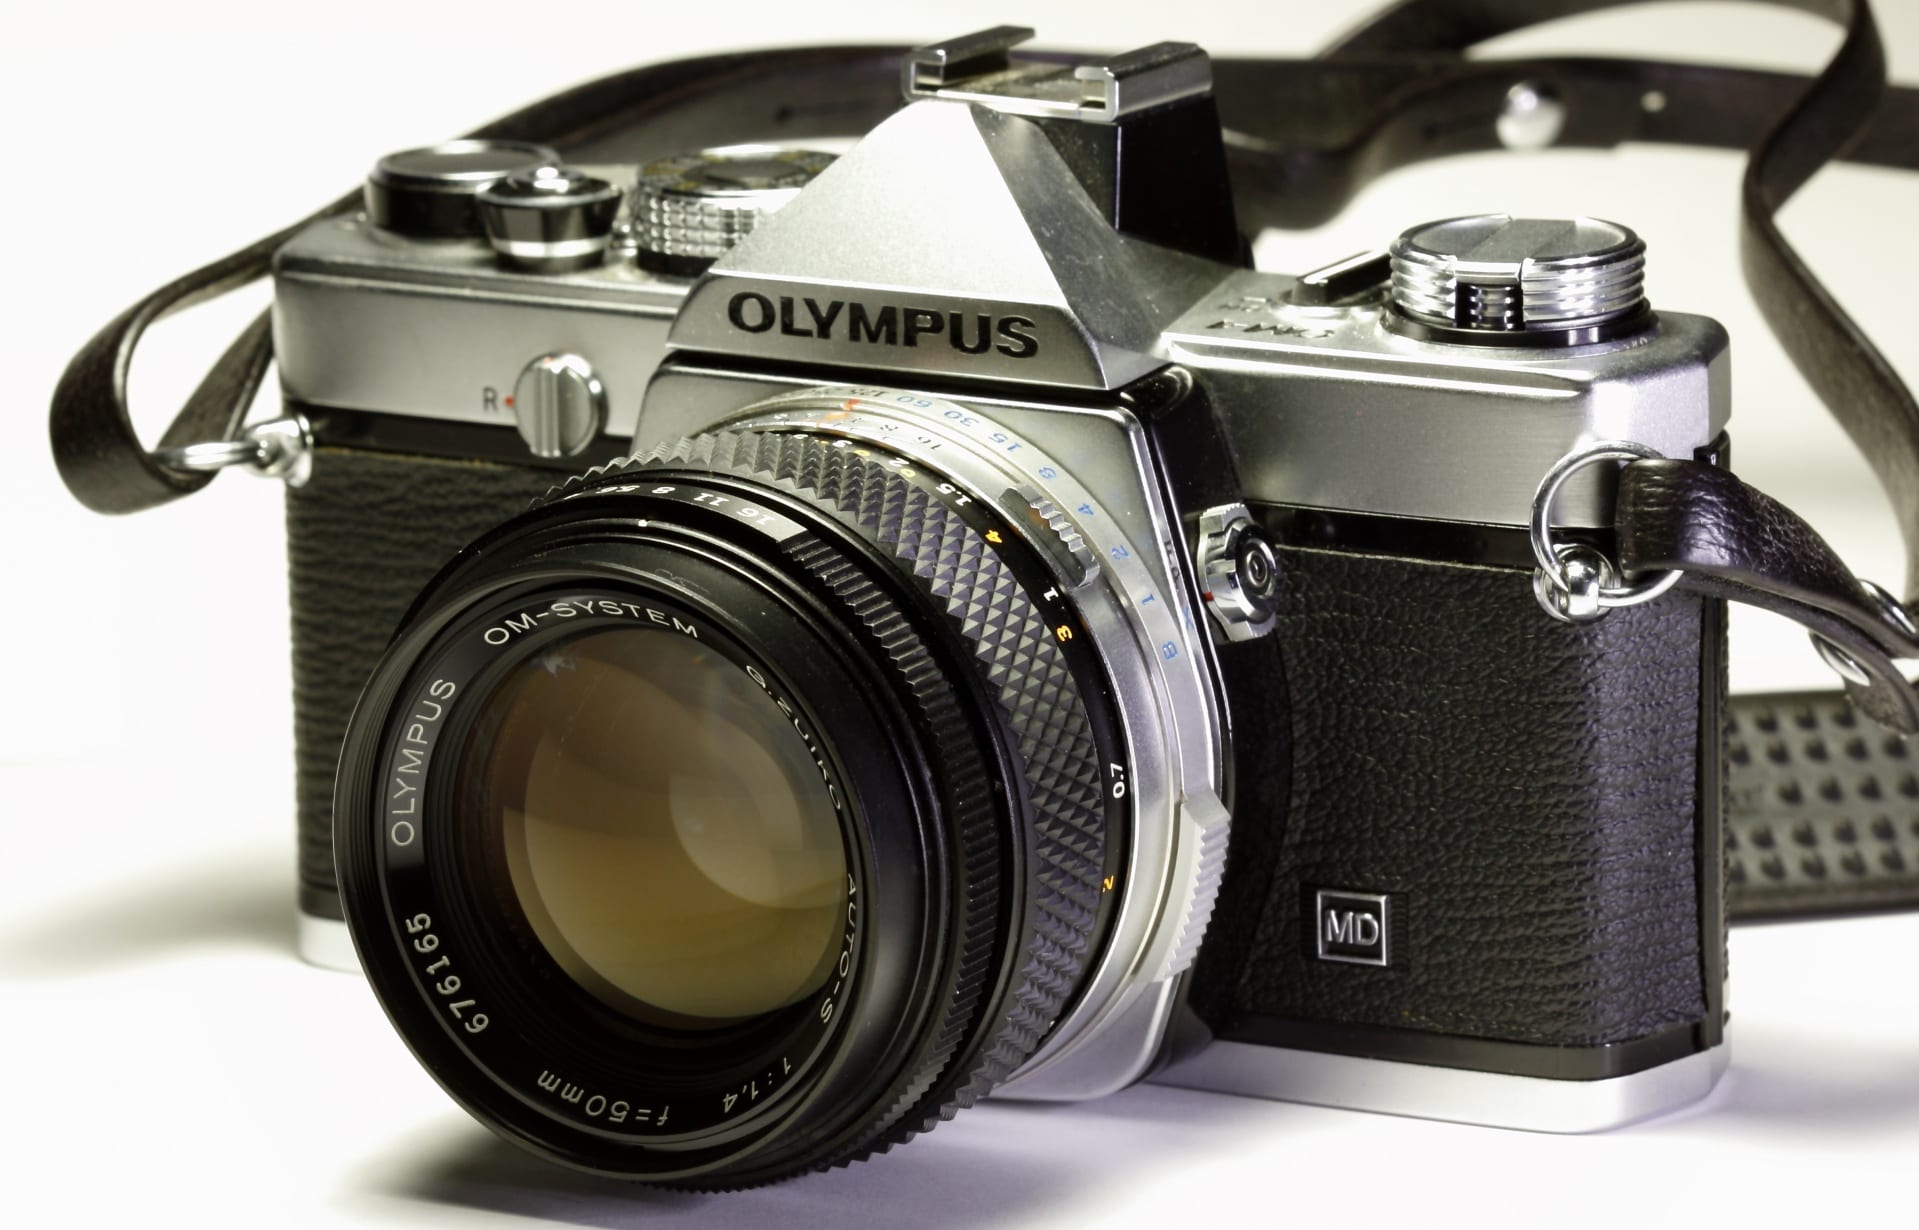 Olympus dice addio alle macchine fotografiche, le produceva da 84 anni